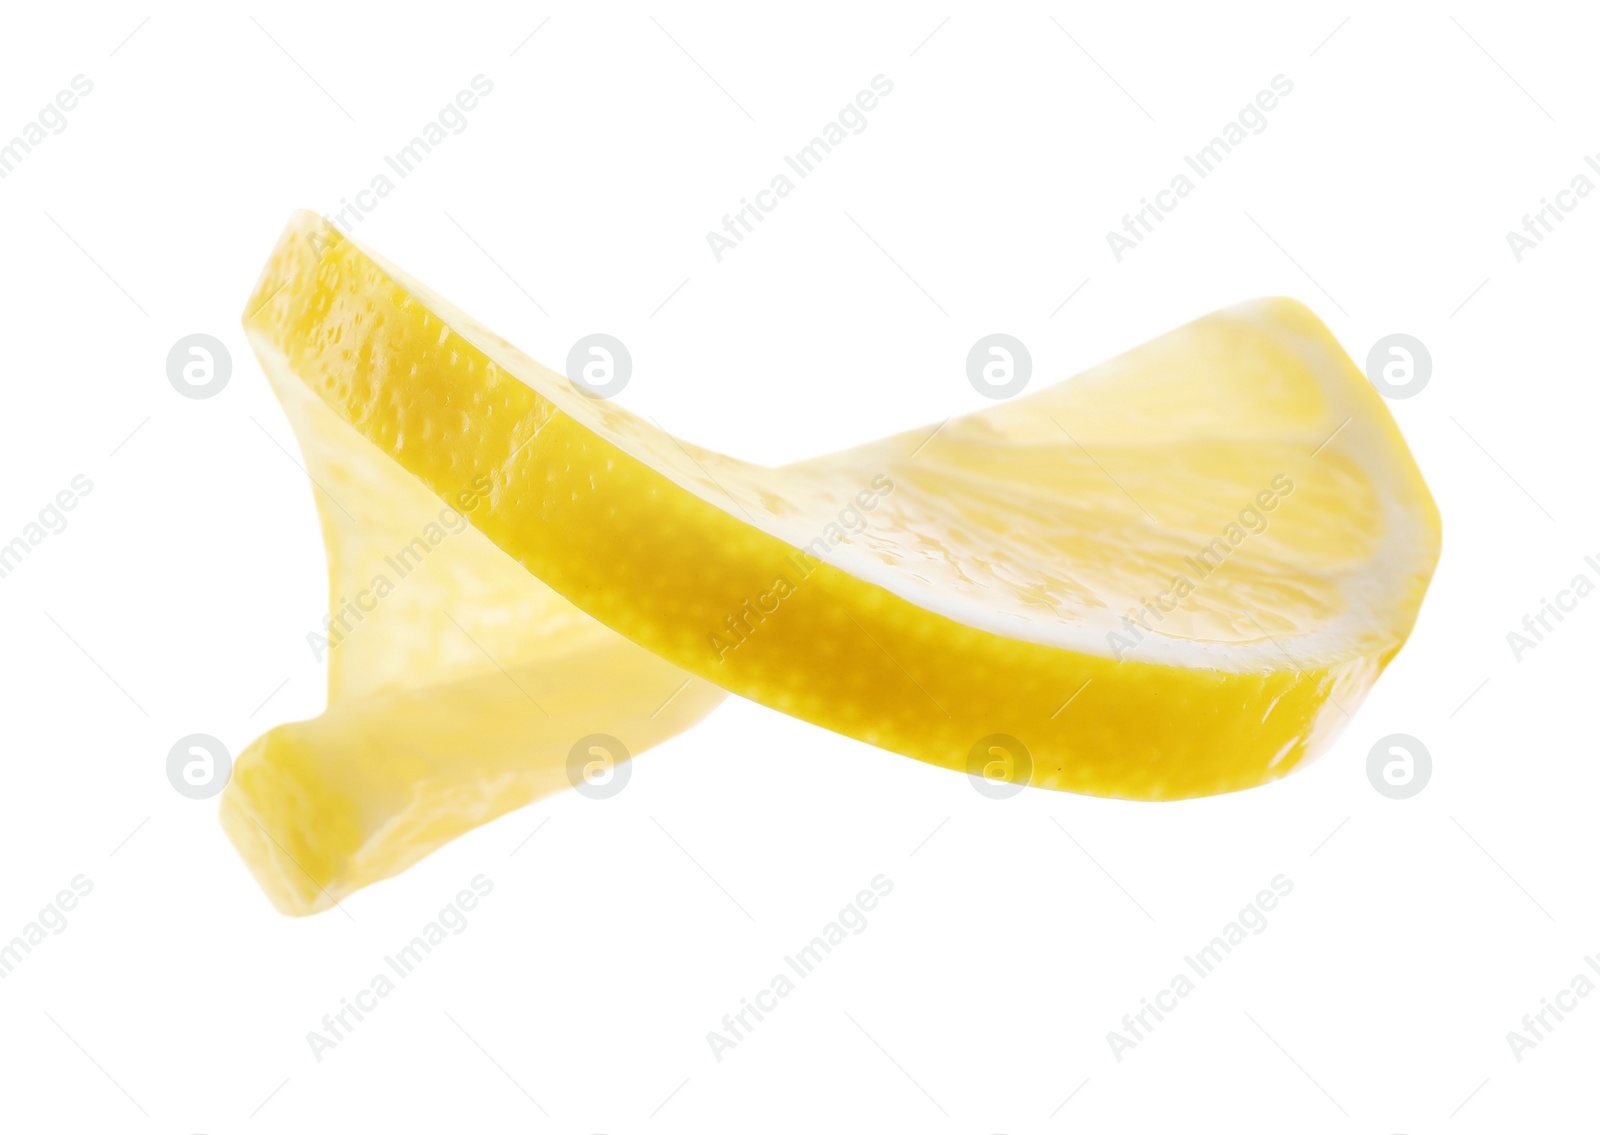 Photo of Slice of fresh juicy lemon on white background